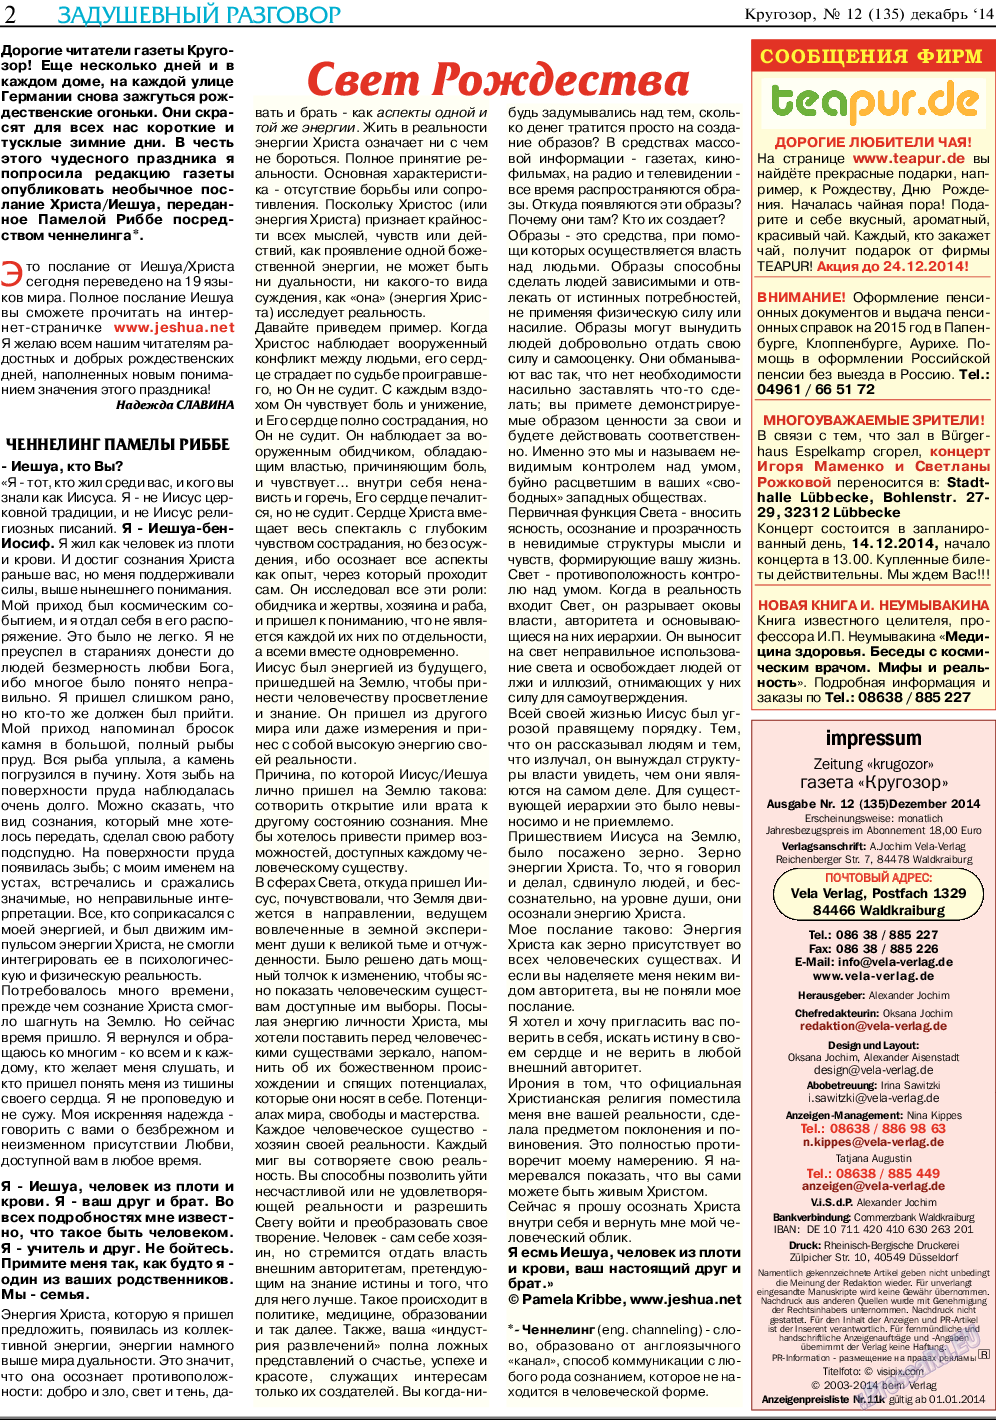 Кругозор, газета. 2014 №12 стр.2